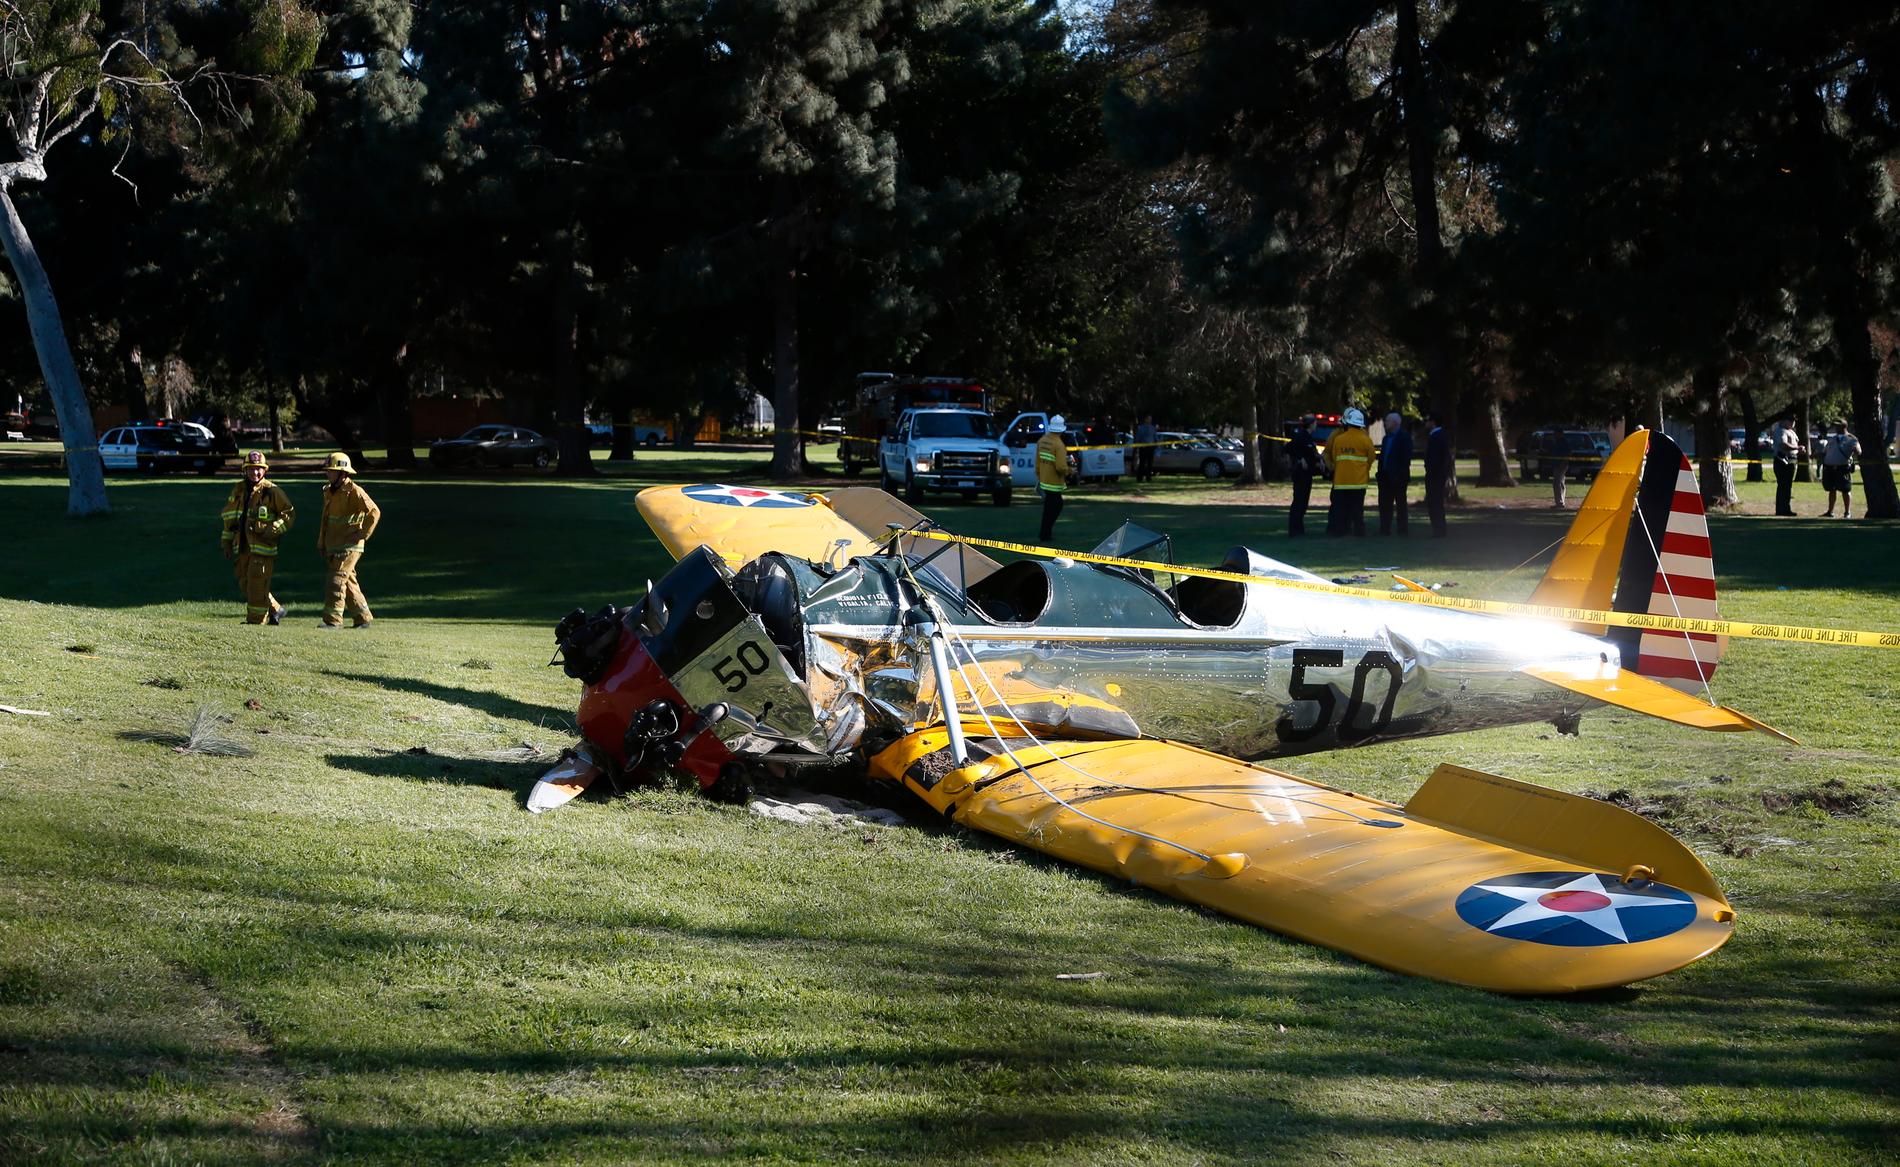 Planet som kraschade på golfbanan uppges ha flugits av skådespelaren Harrison Ford.